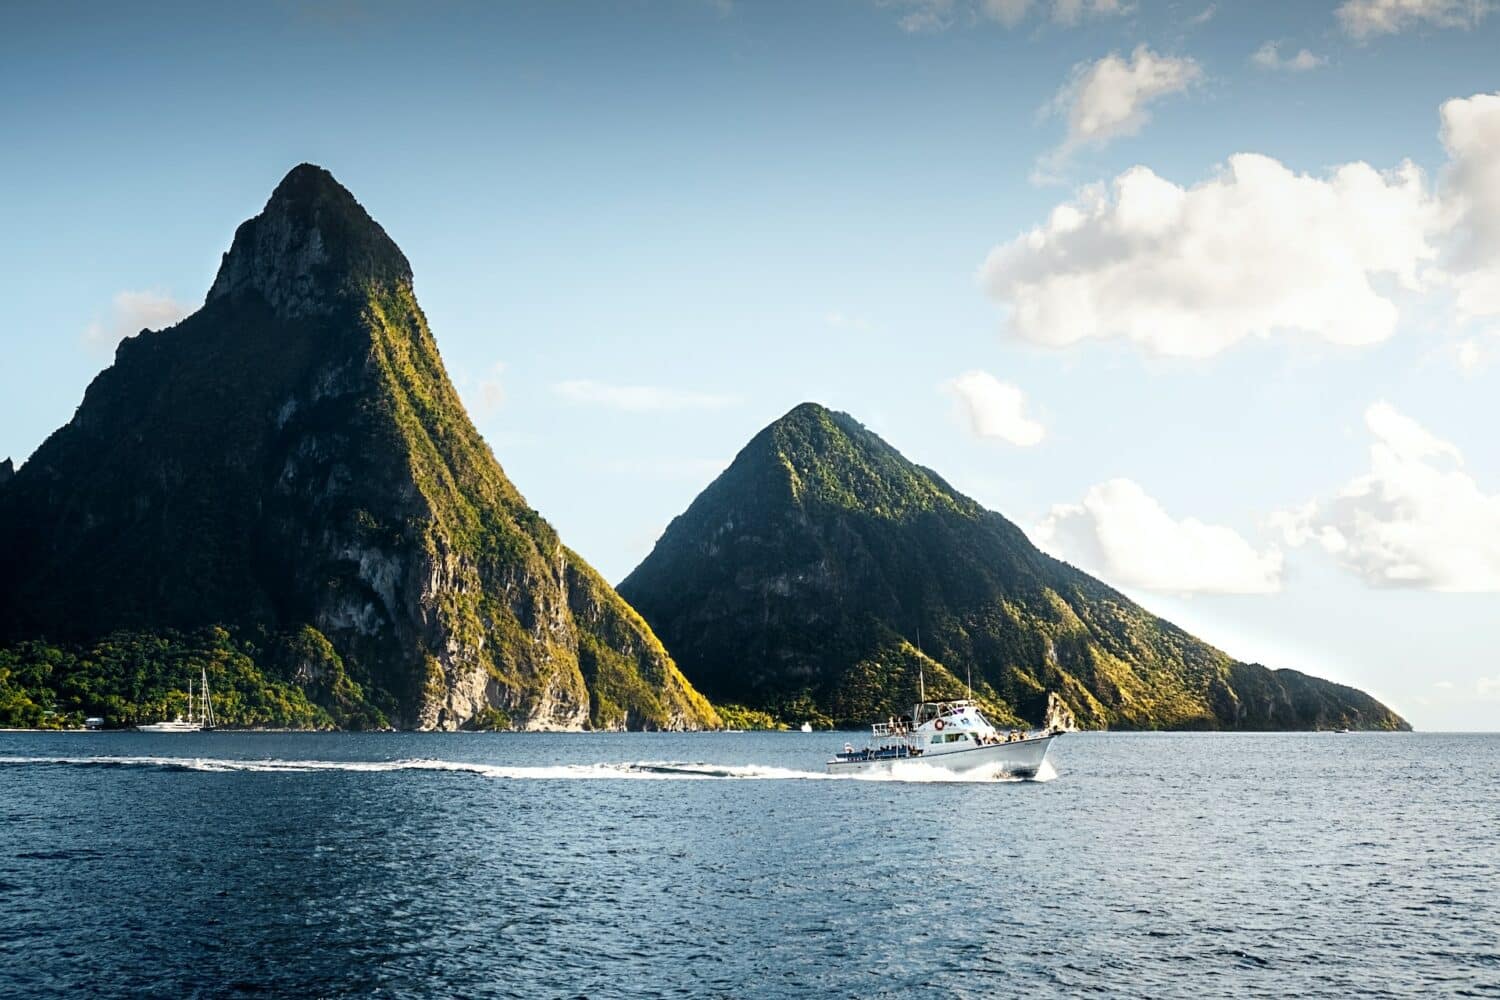 Barco branco no mar azul em frente aos picos vulcânicos chamados de "Gros Piton" durante o dia, ilustrando post chip celular Santa Lúcia.